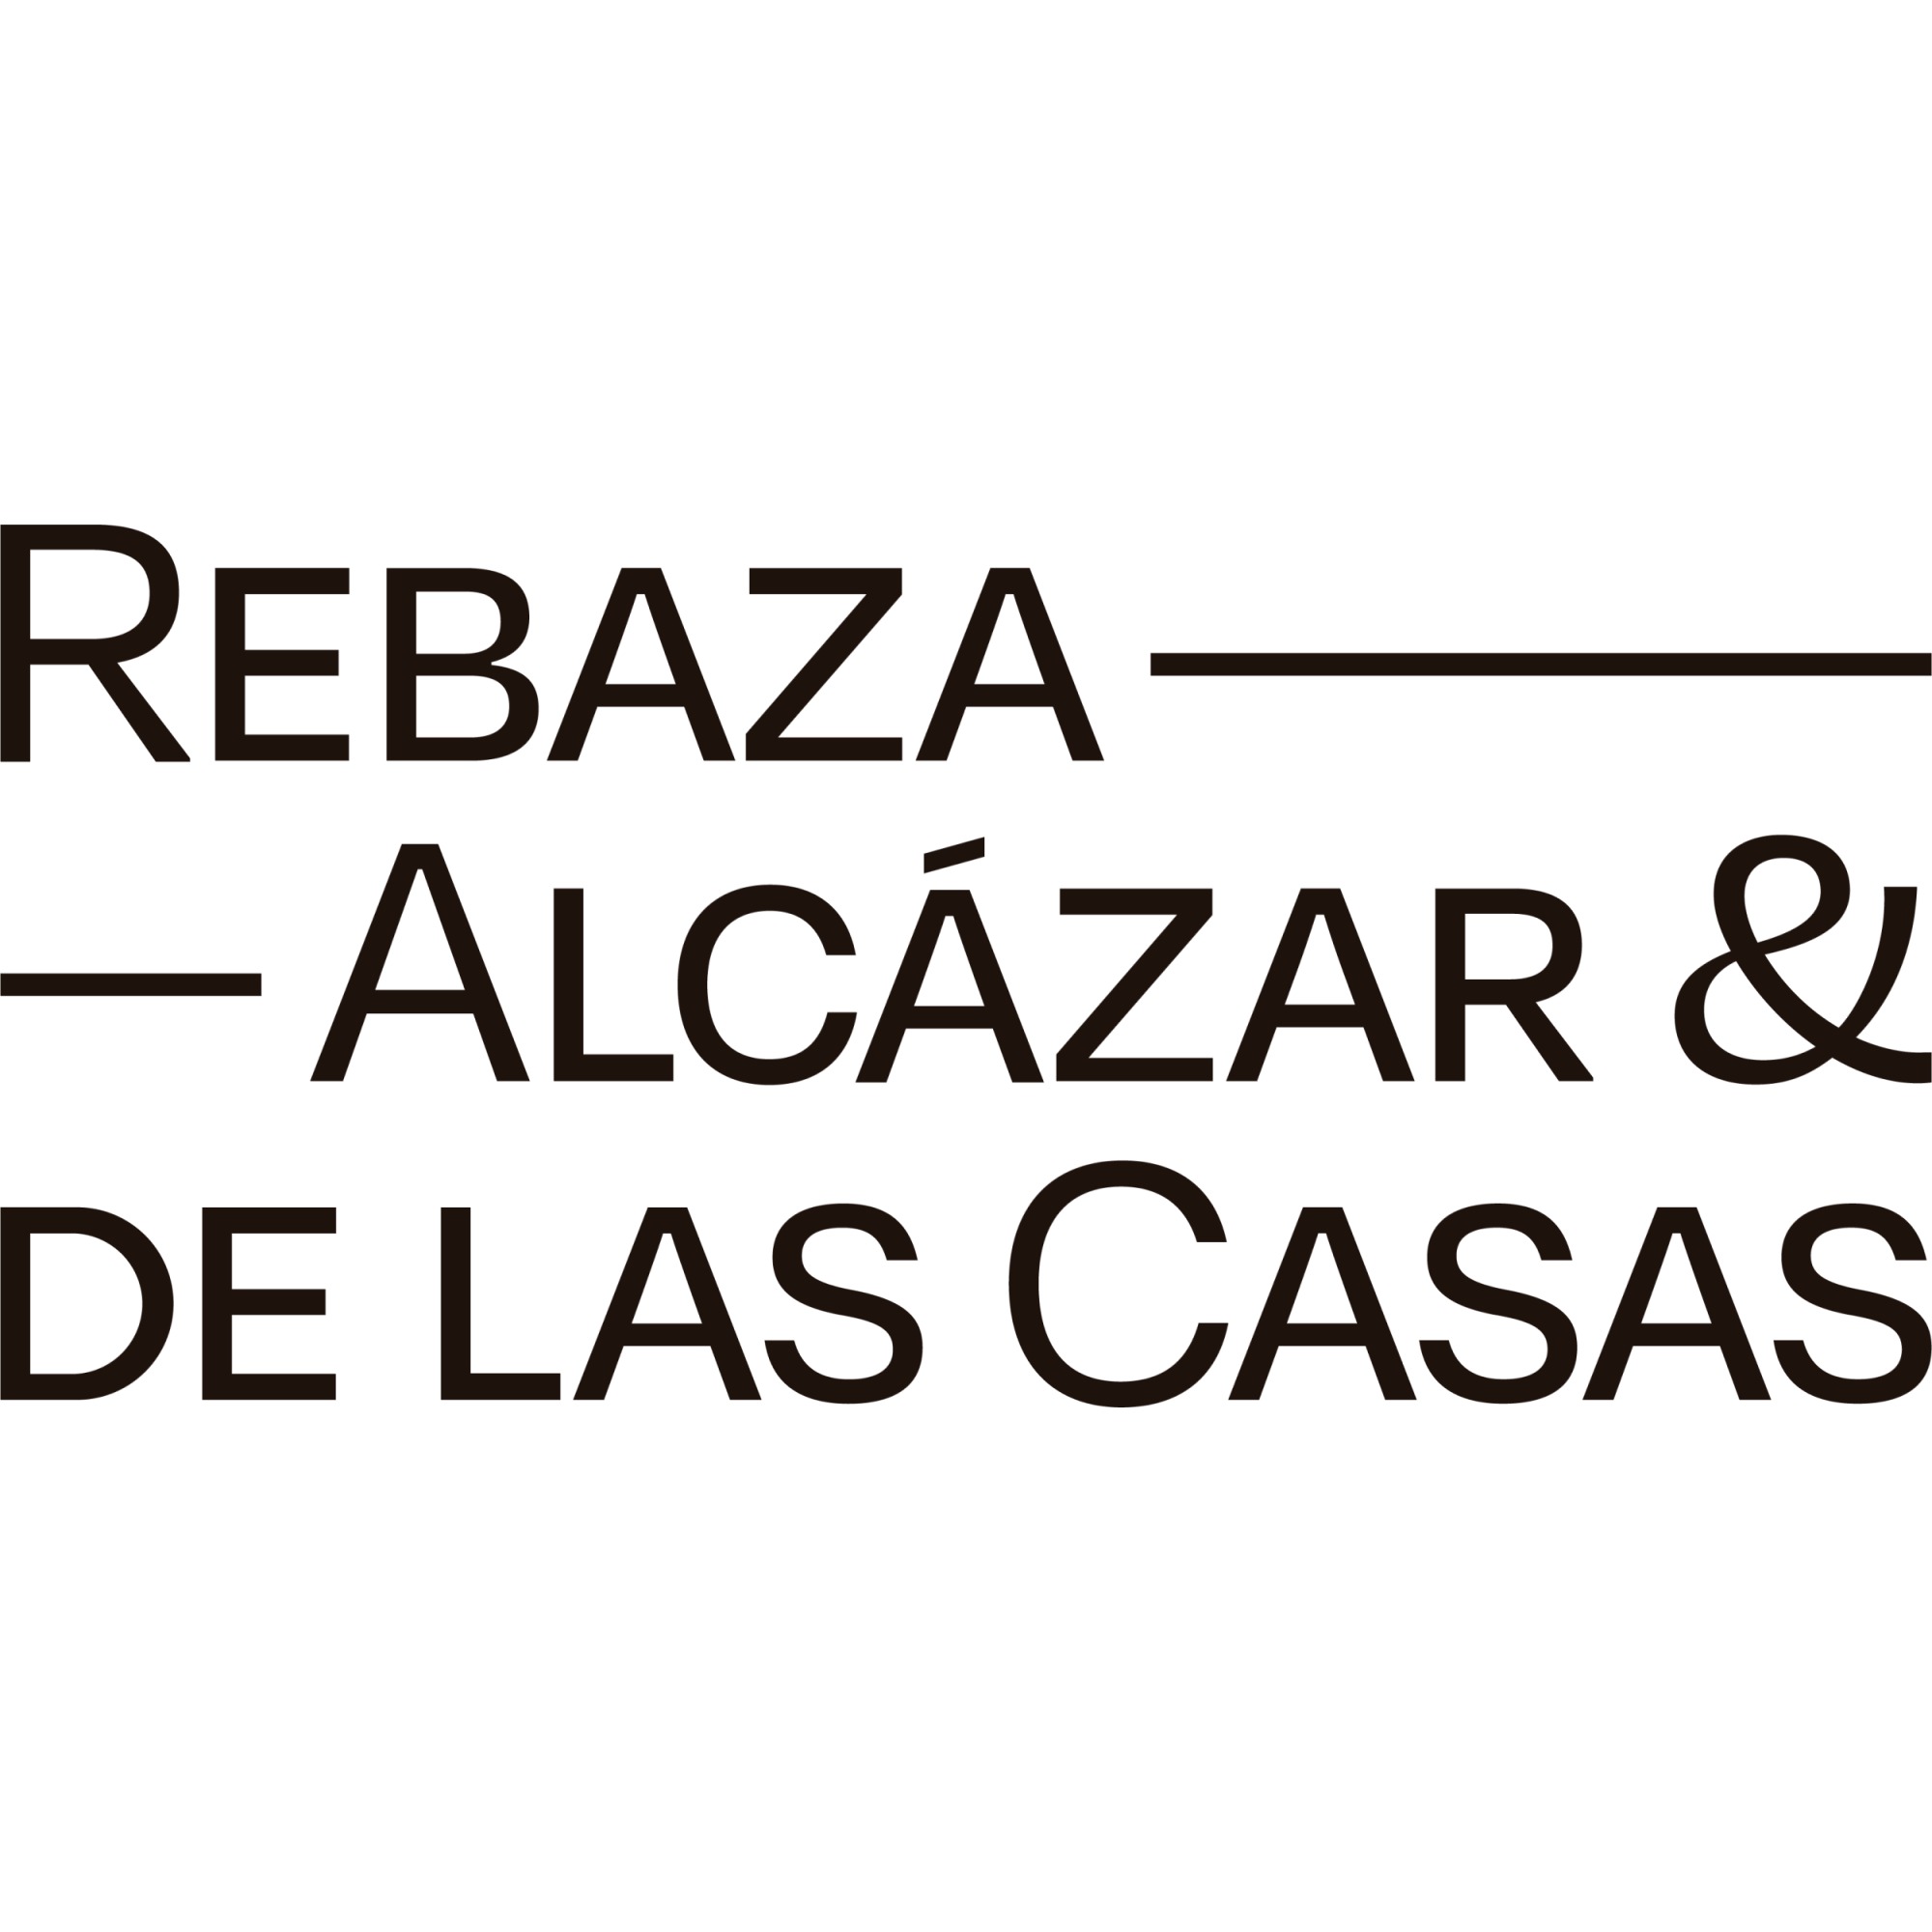 Rebaza, Alcázar & De Las Casas